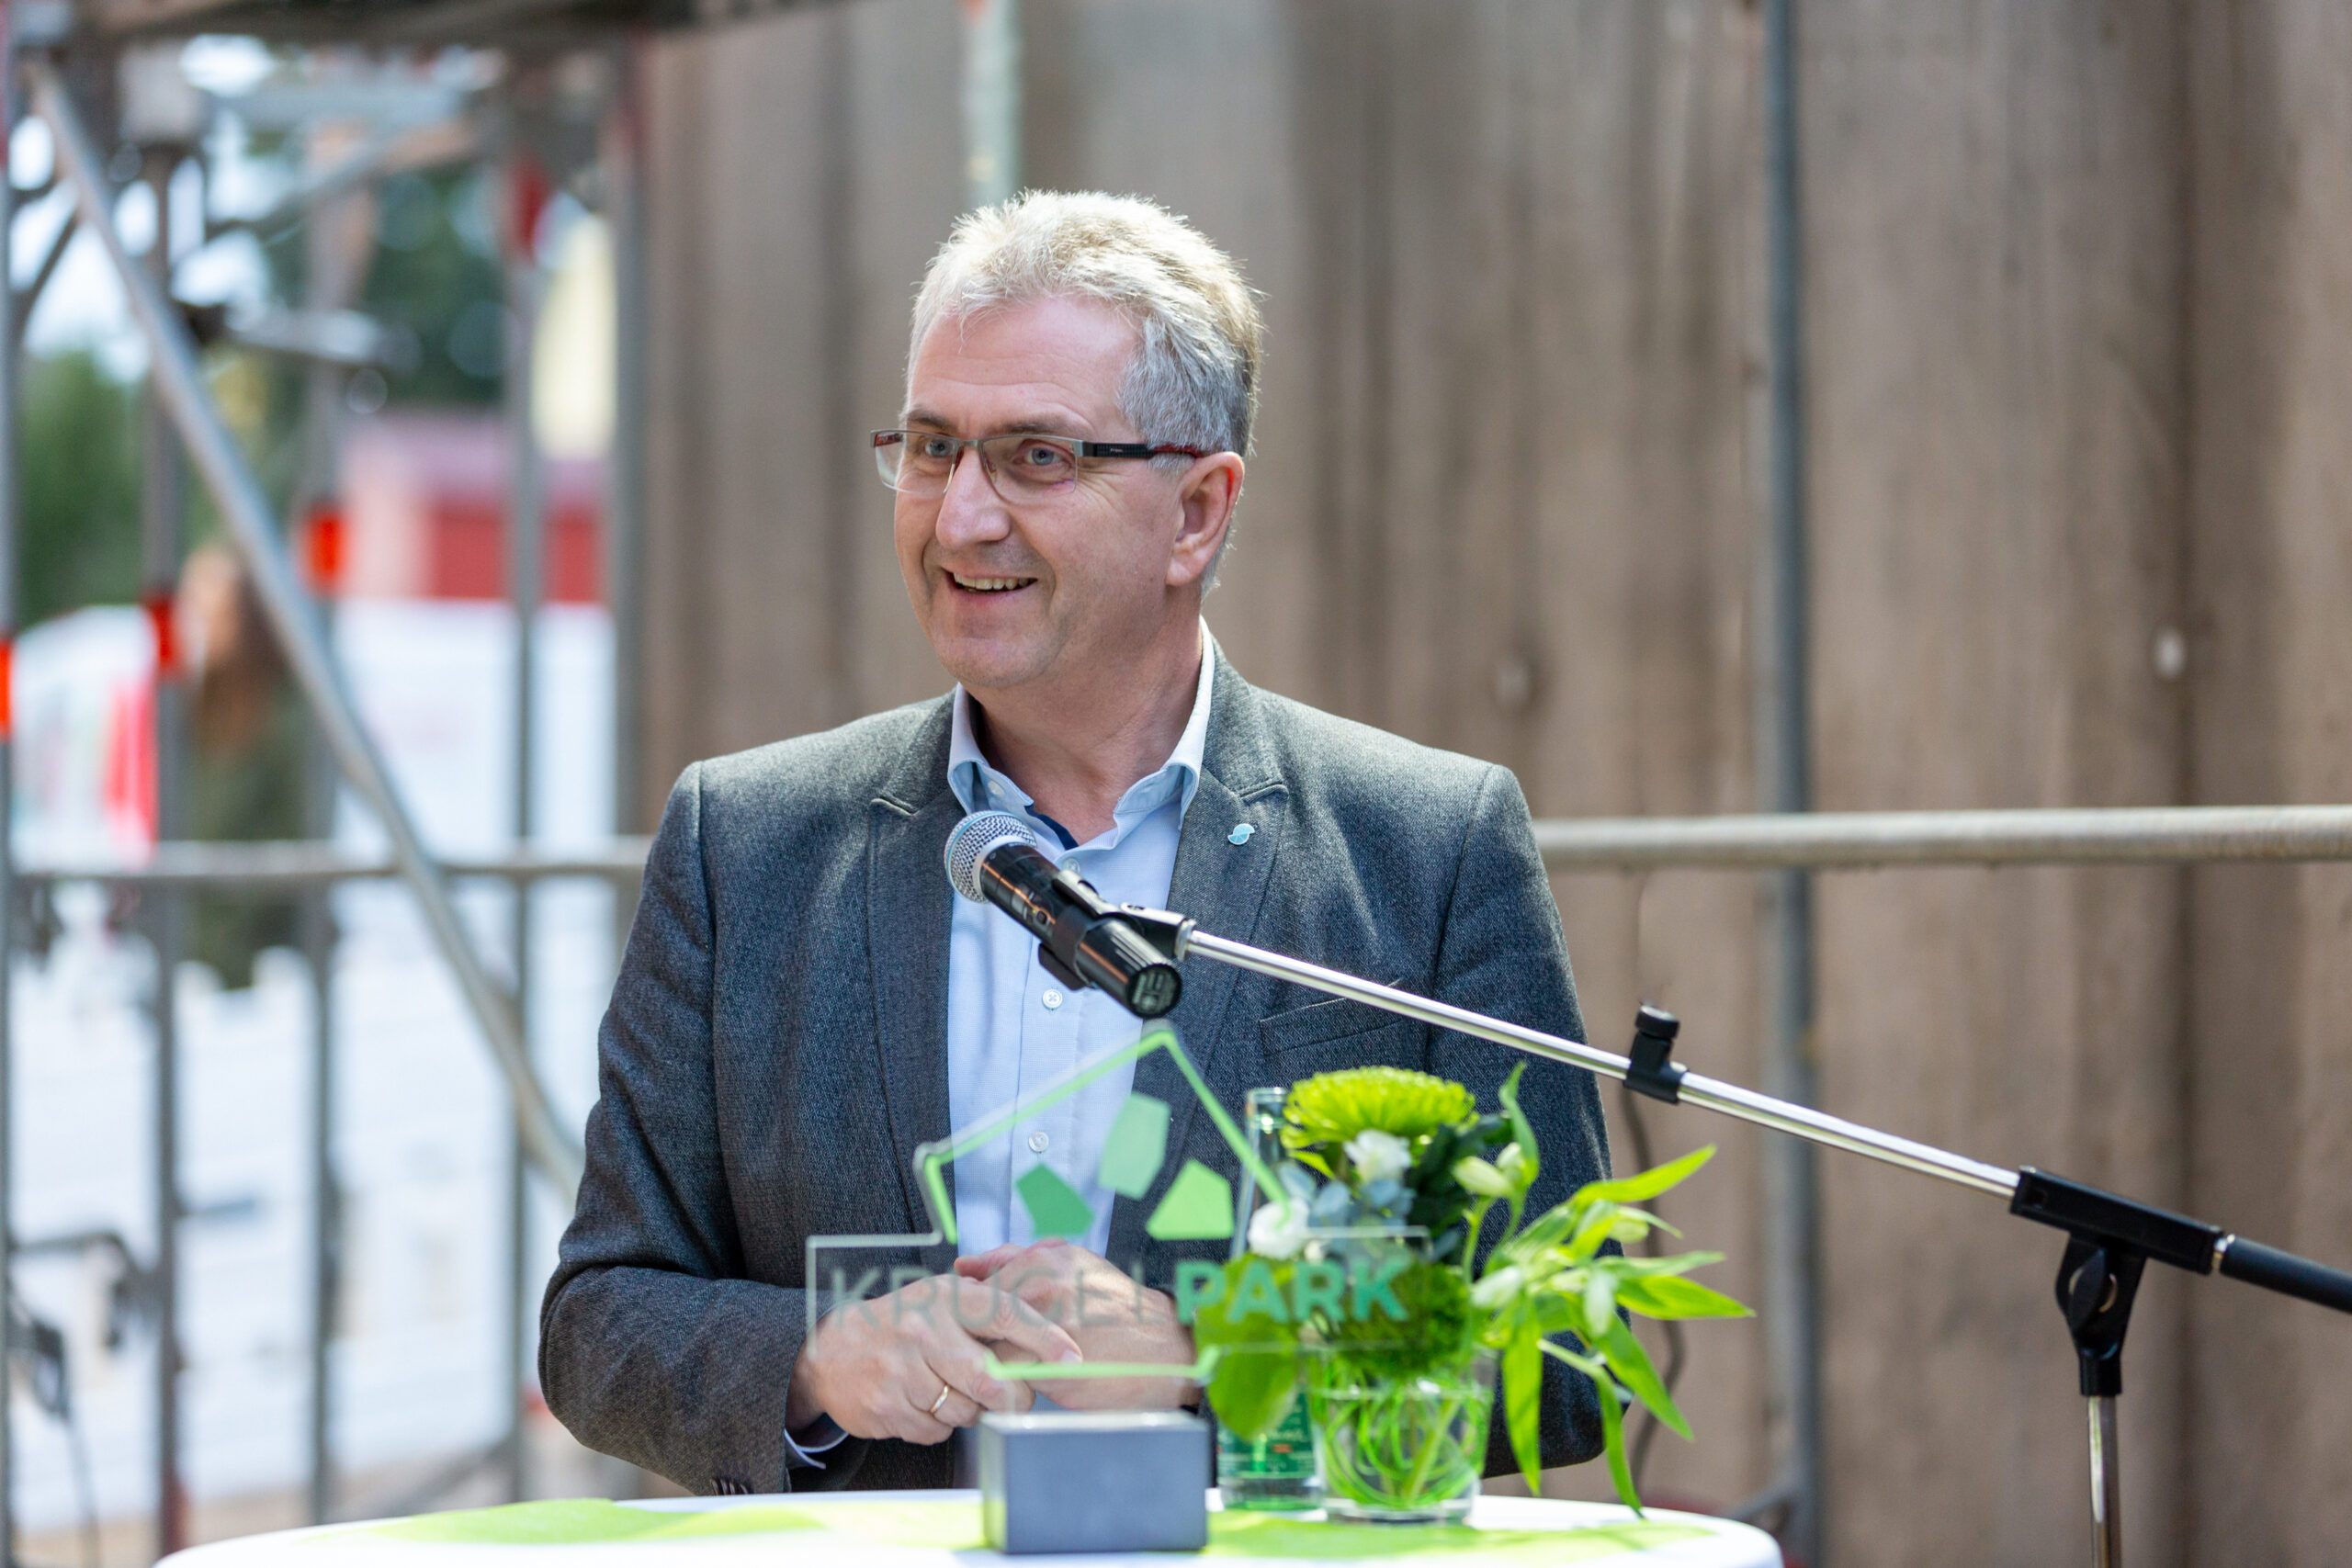 Bürgermeister Kurt Krömer bei seiner Rede zur Eröffnung der Musterwohnung im Krügelpark